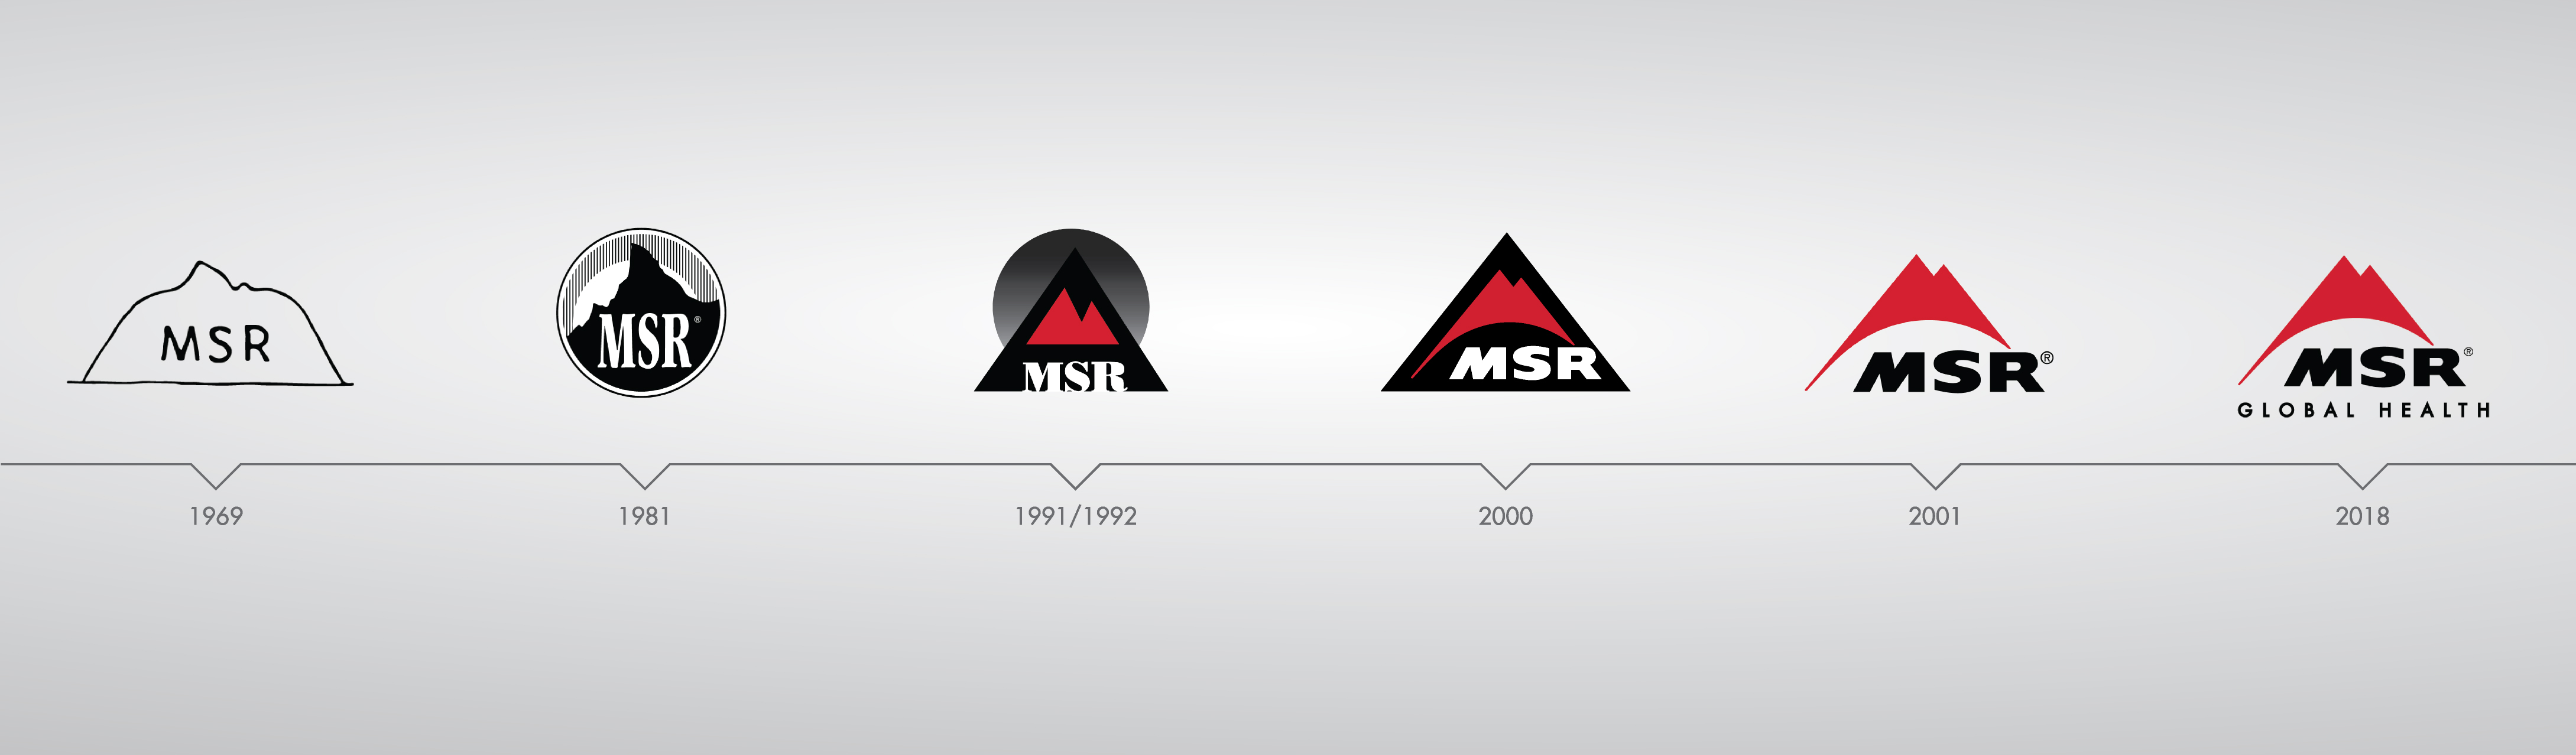 A timeline of the MSR logo